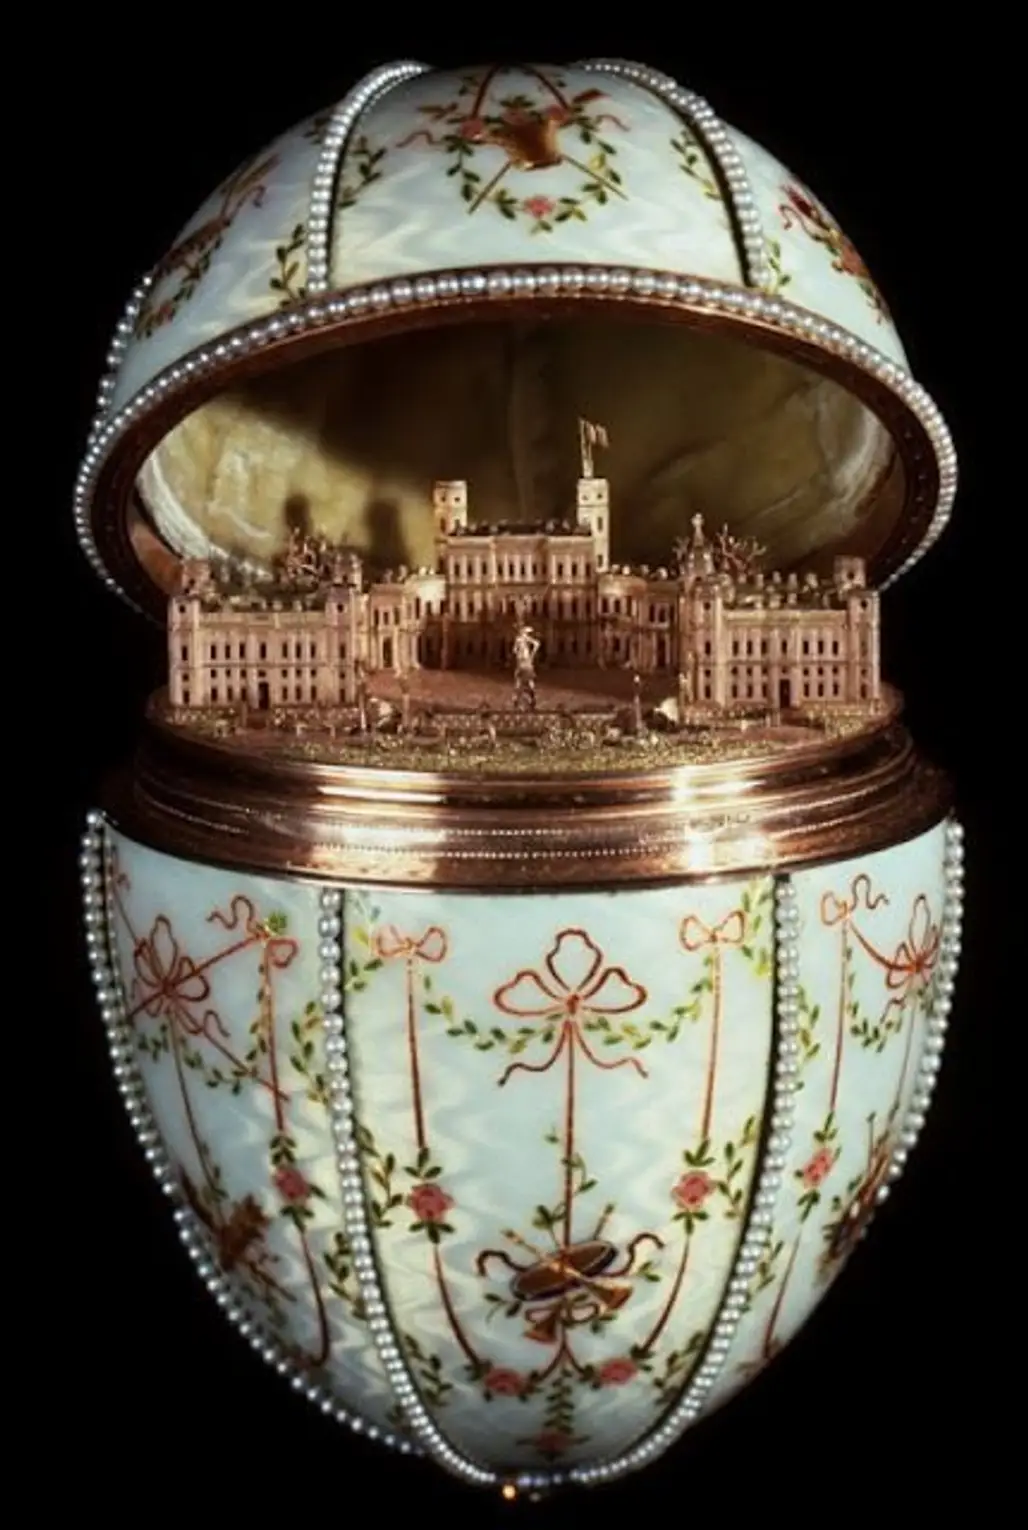 The Gatchina Palace Egg